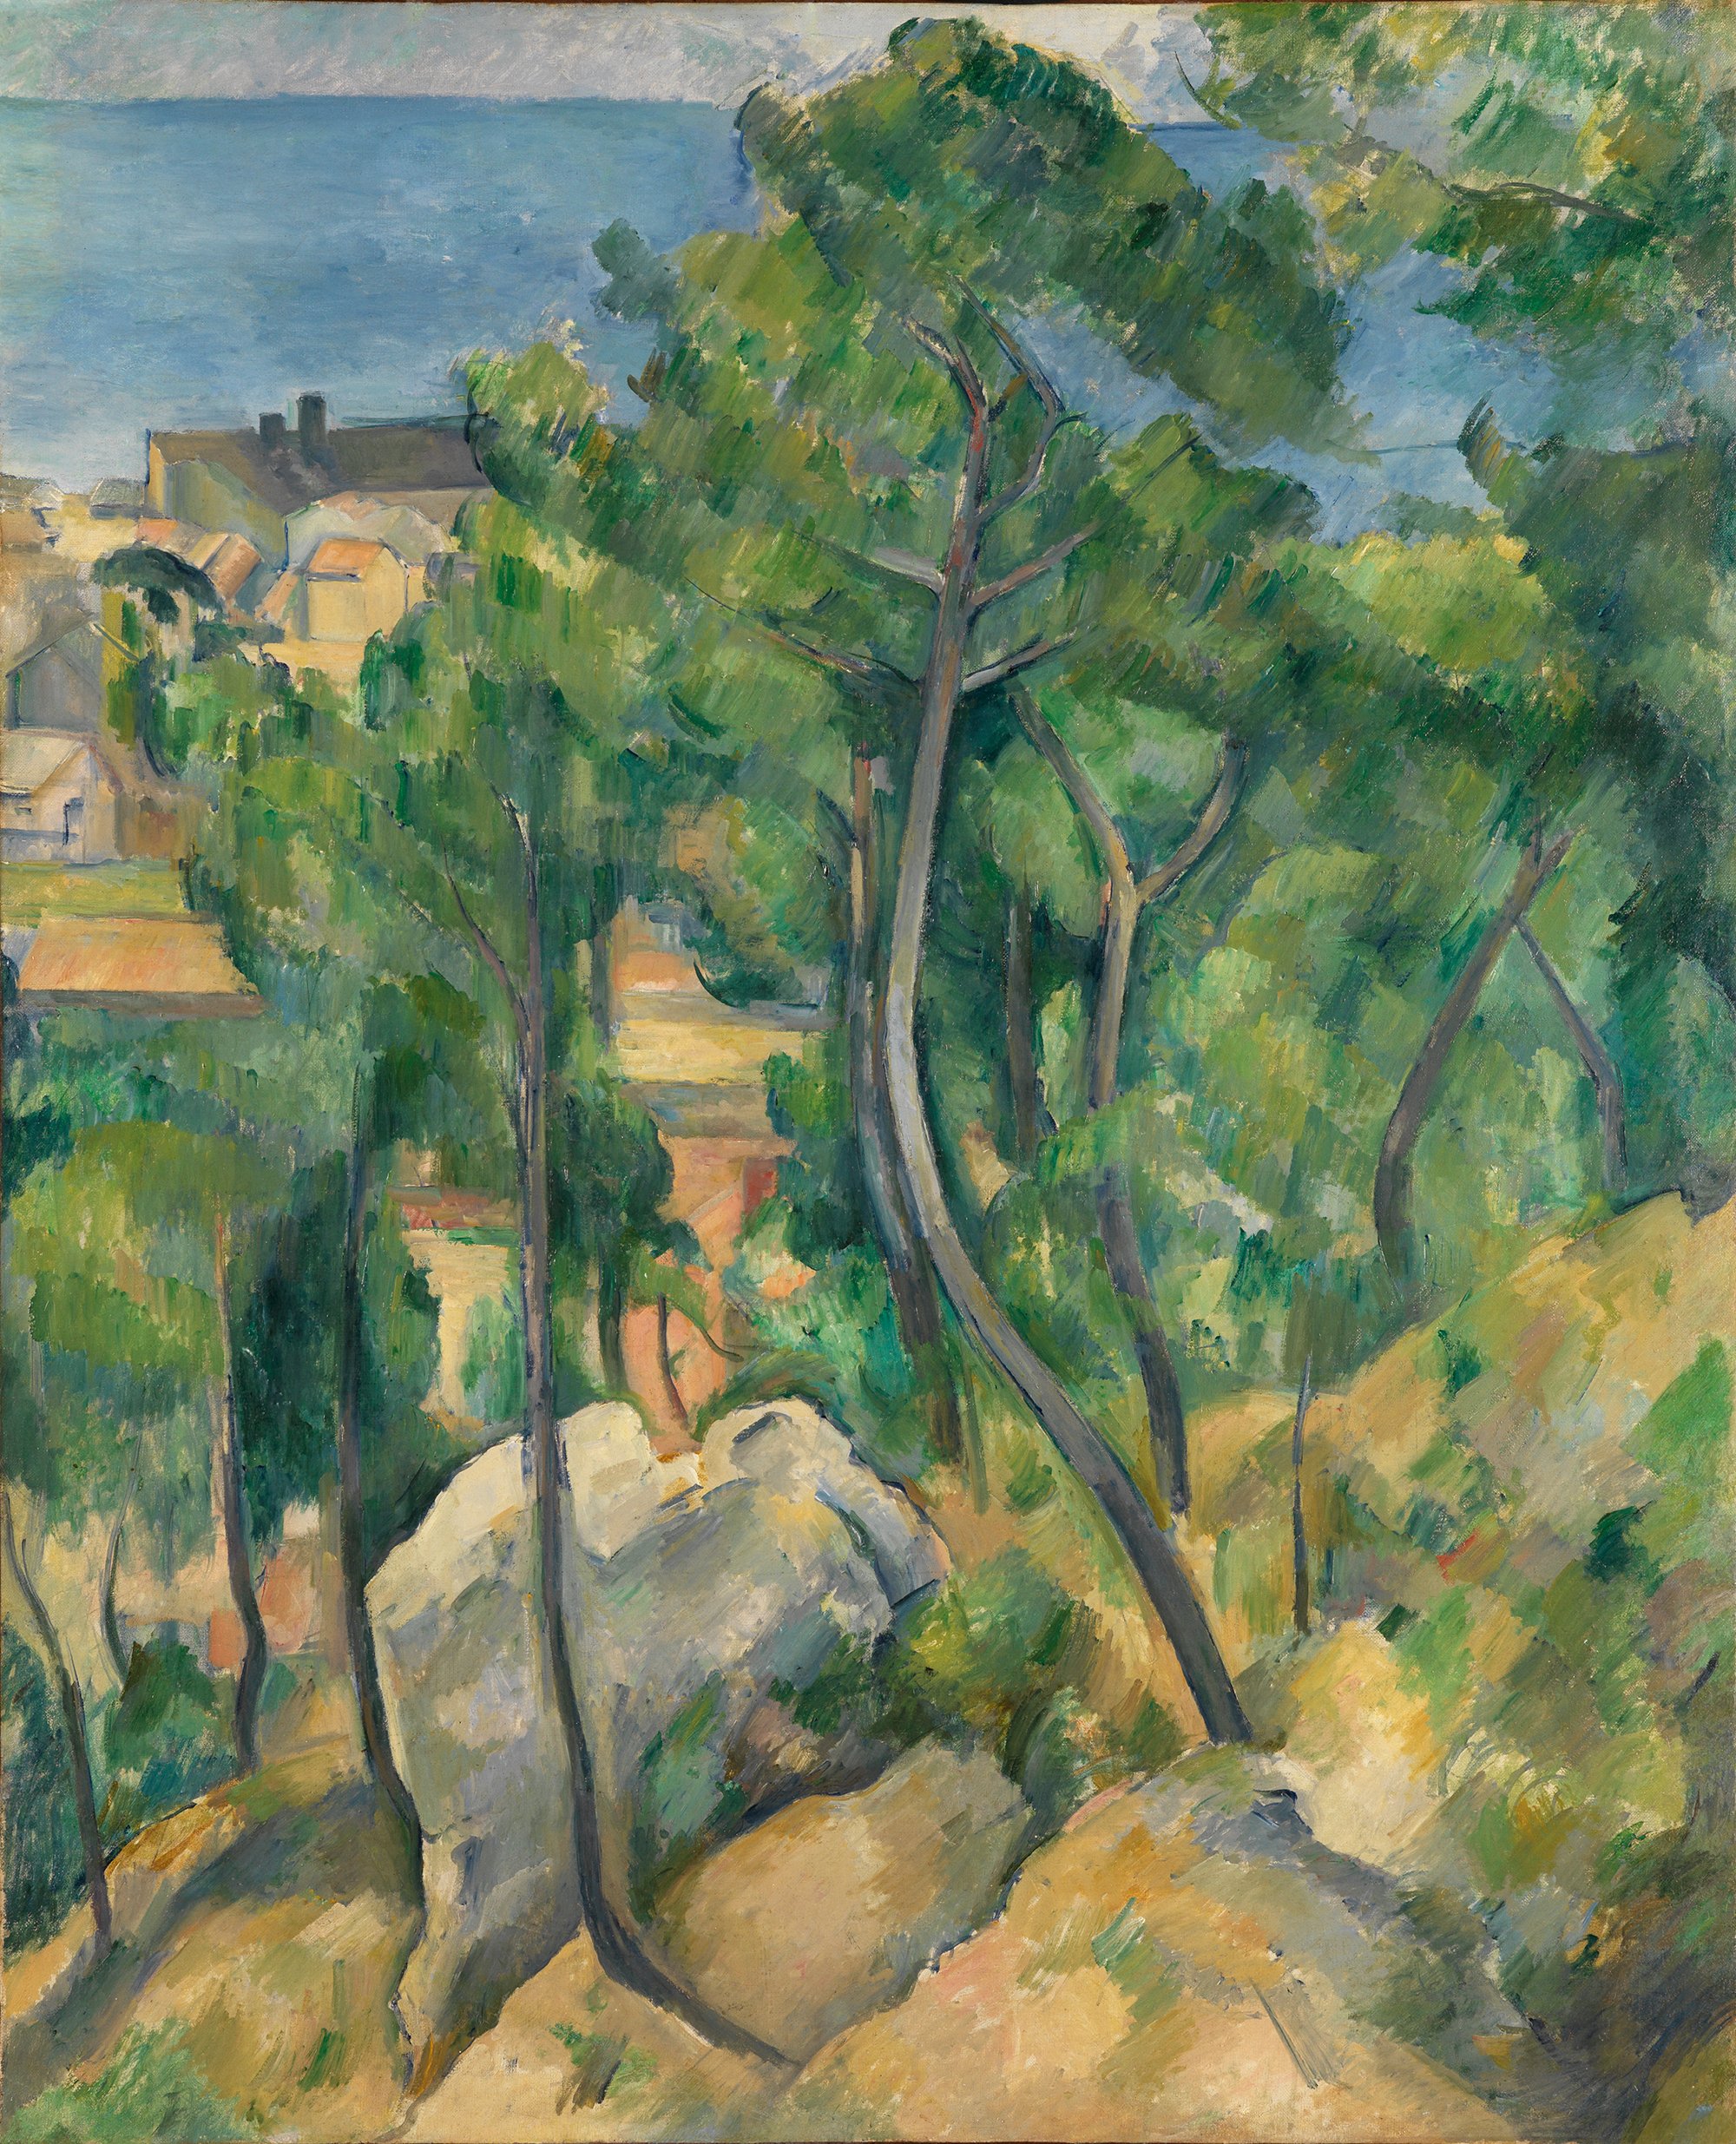 Abbildung des Werks "Blick auf das Meer bei L’Estaque" des Künstlers Paul Cézanne, das in der Ausstellung "Cézanne. Metamorphosen" vom 28. Oktober 2017 bis 11. Februar 2018 in der Staatlichen Kunsthalle Karlsruhe zu sehen war.